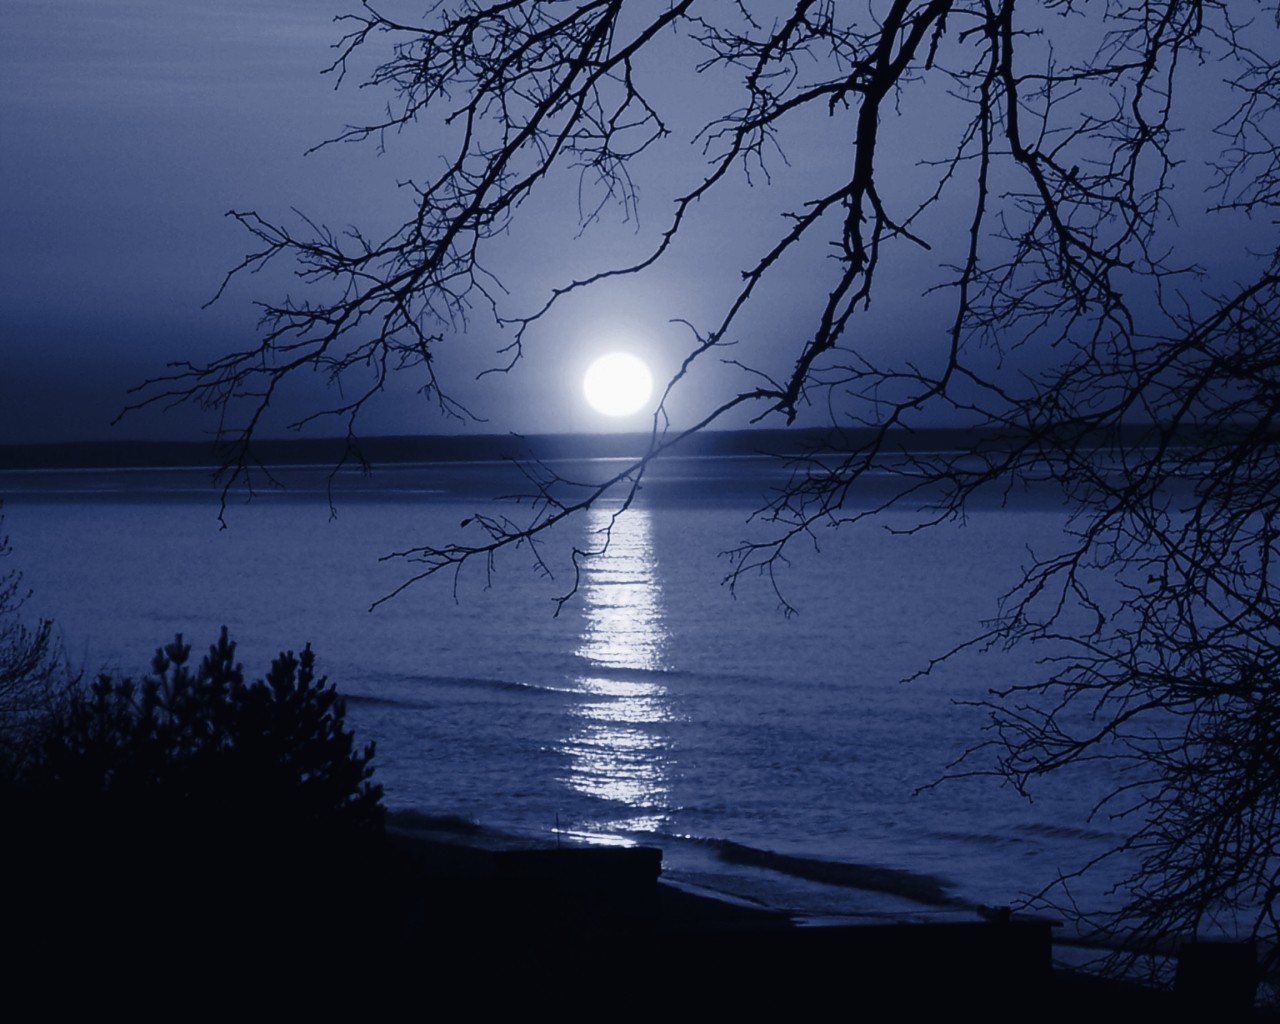 Золотою луна распласталась на тихой воде. Иллюстрация к стихотворению Фета еще Майская ночь. Рисунок к стихотворению Фета еще Майская ночь. Лунная ночь. Река ночью.